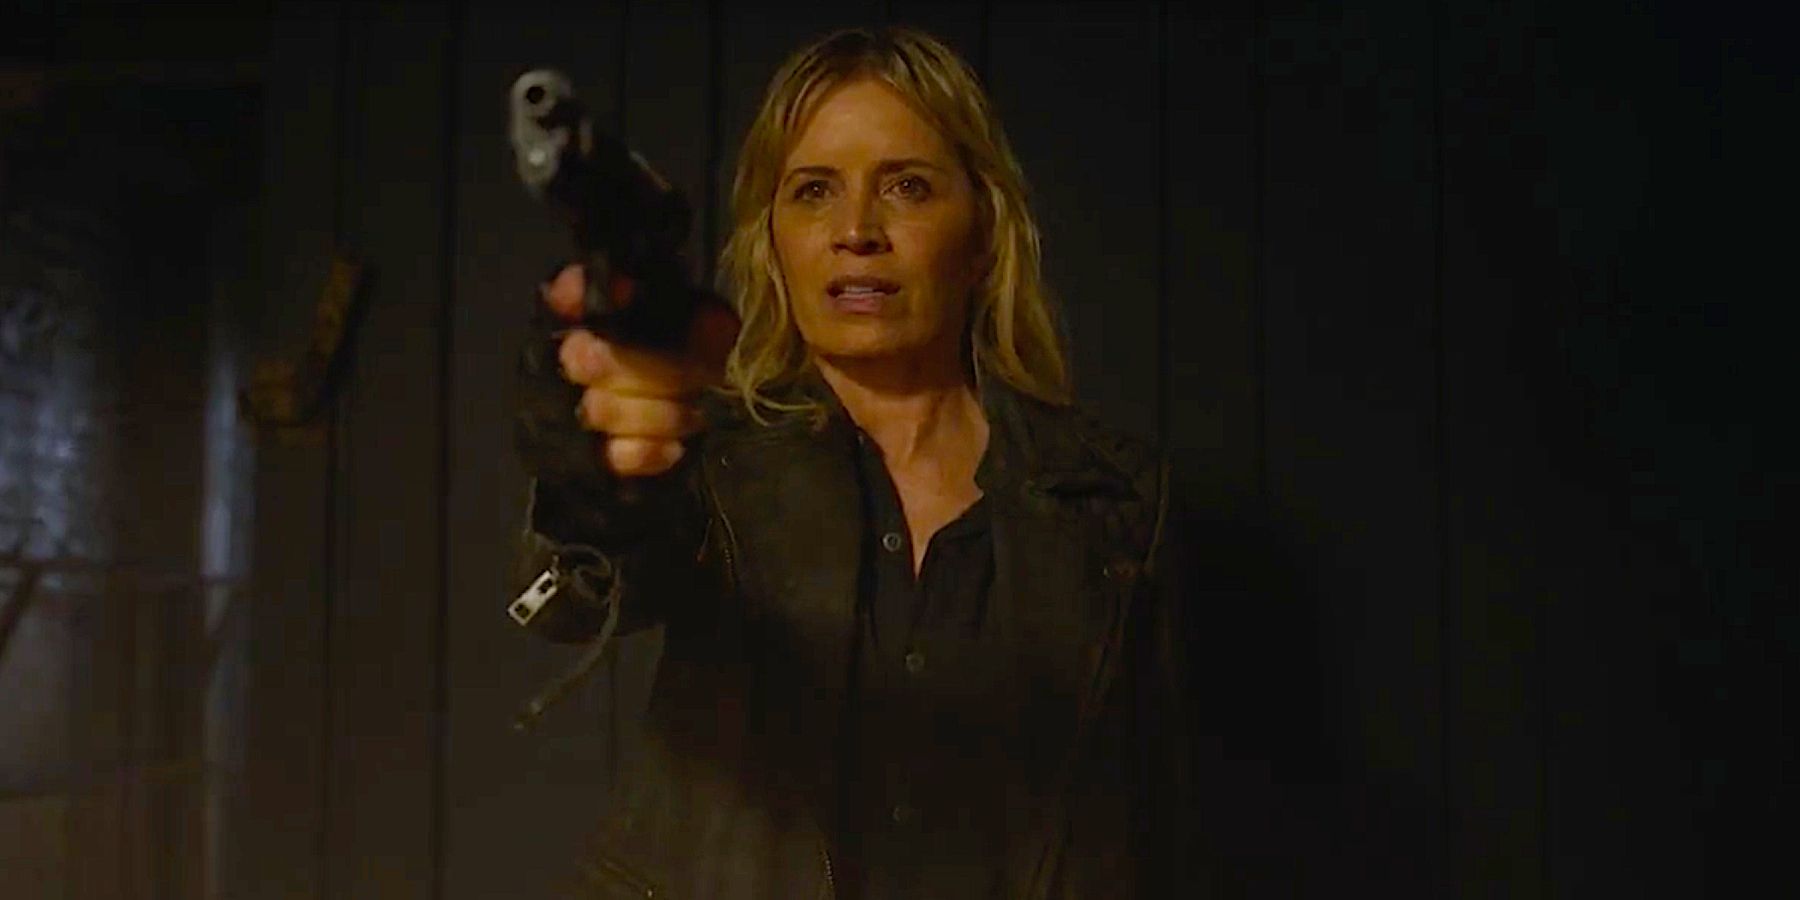 Madison points a gun in Fear the Walking Dead Season 8